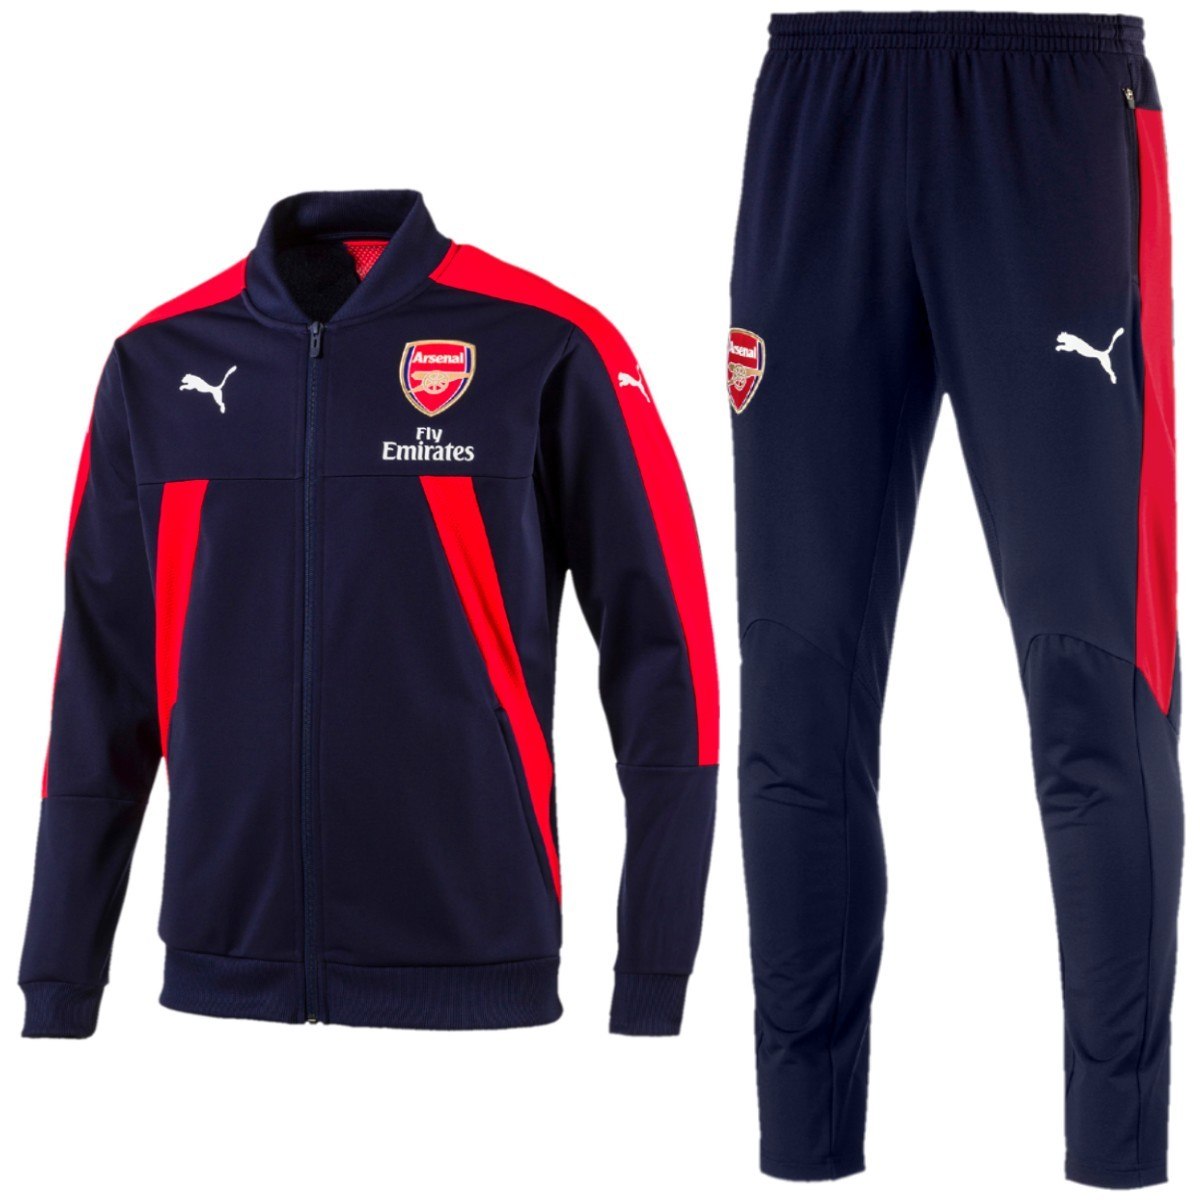 Спортивный костюм 7. Puma Arsenal костюм. Спортивные костюм adidas Arsenal. Спортивные костюмы адидас мужские 2020. Puma мужской спортивный костюм 2023.